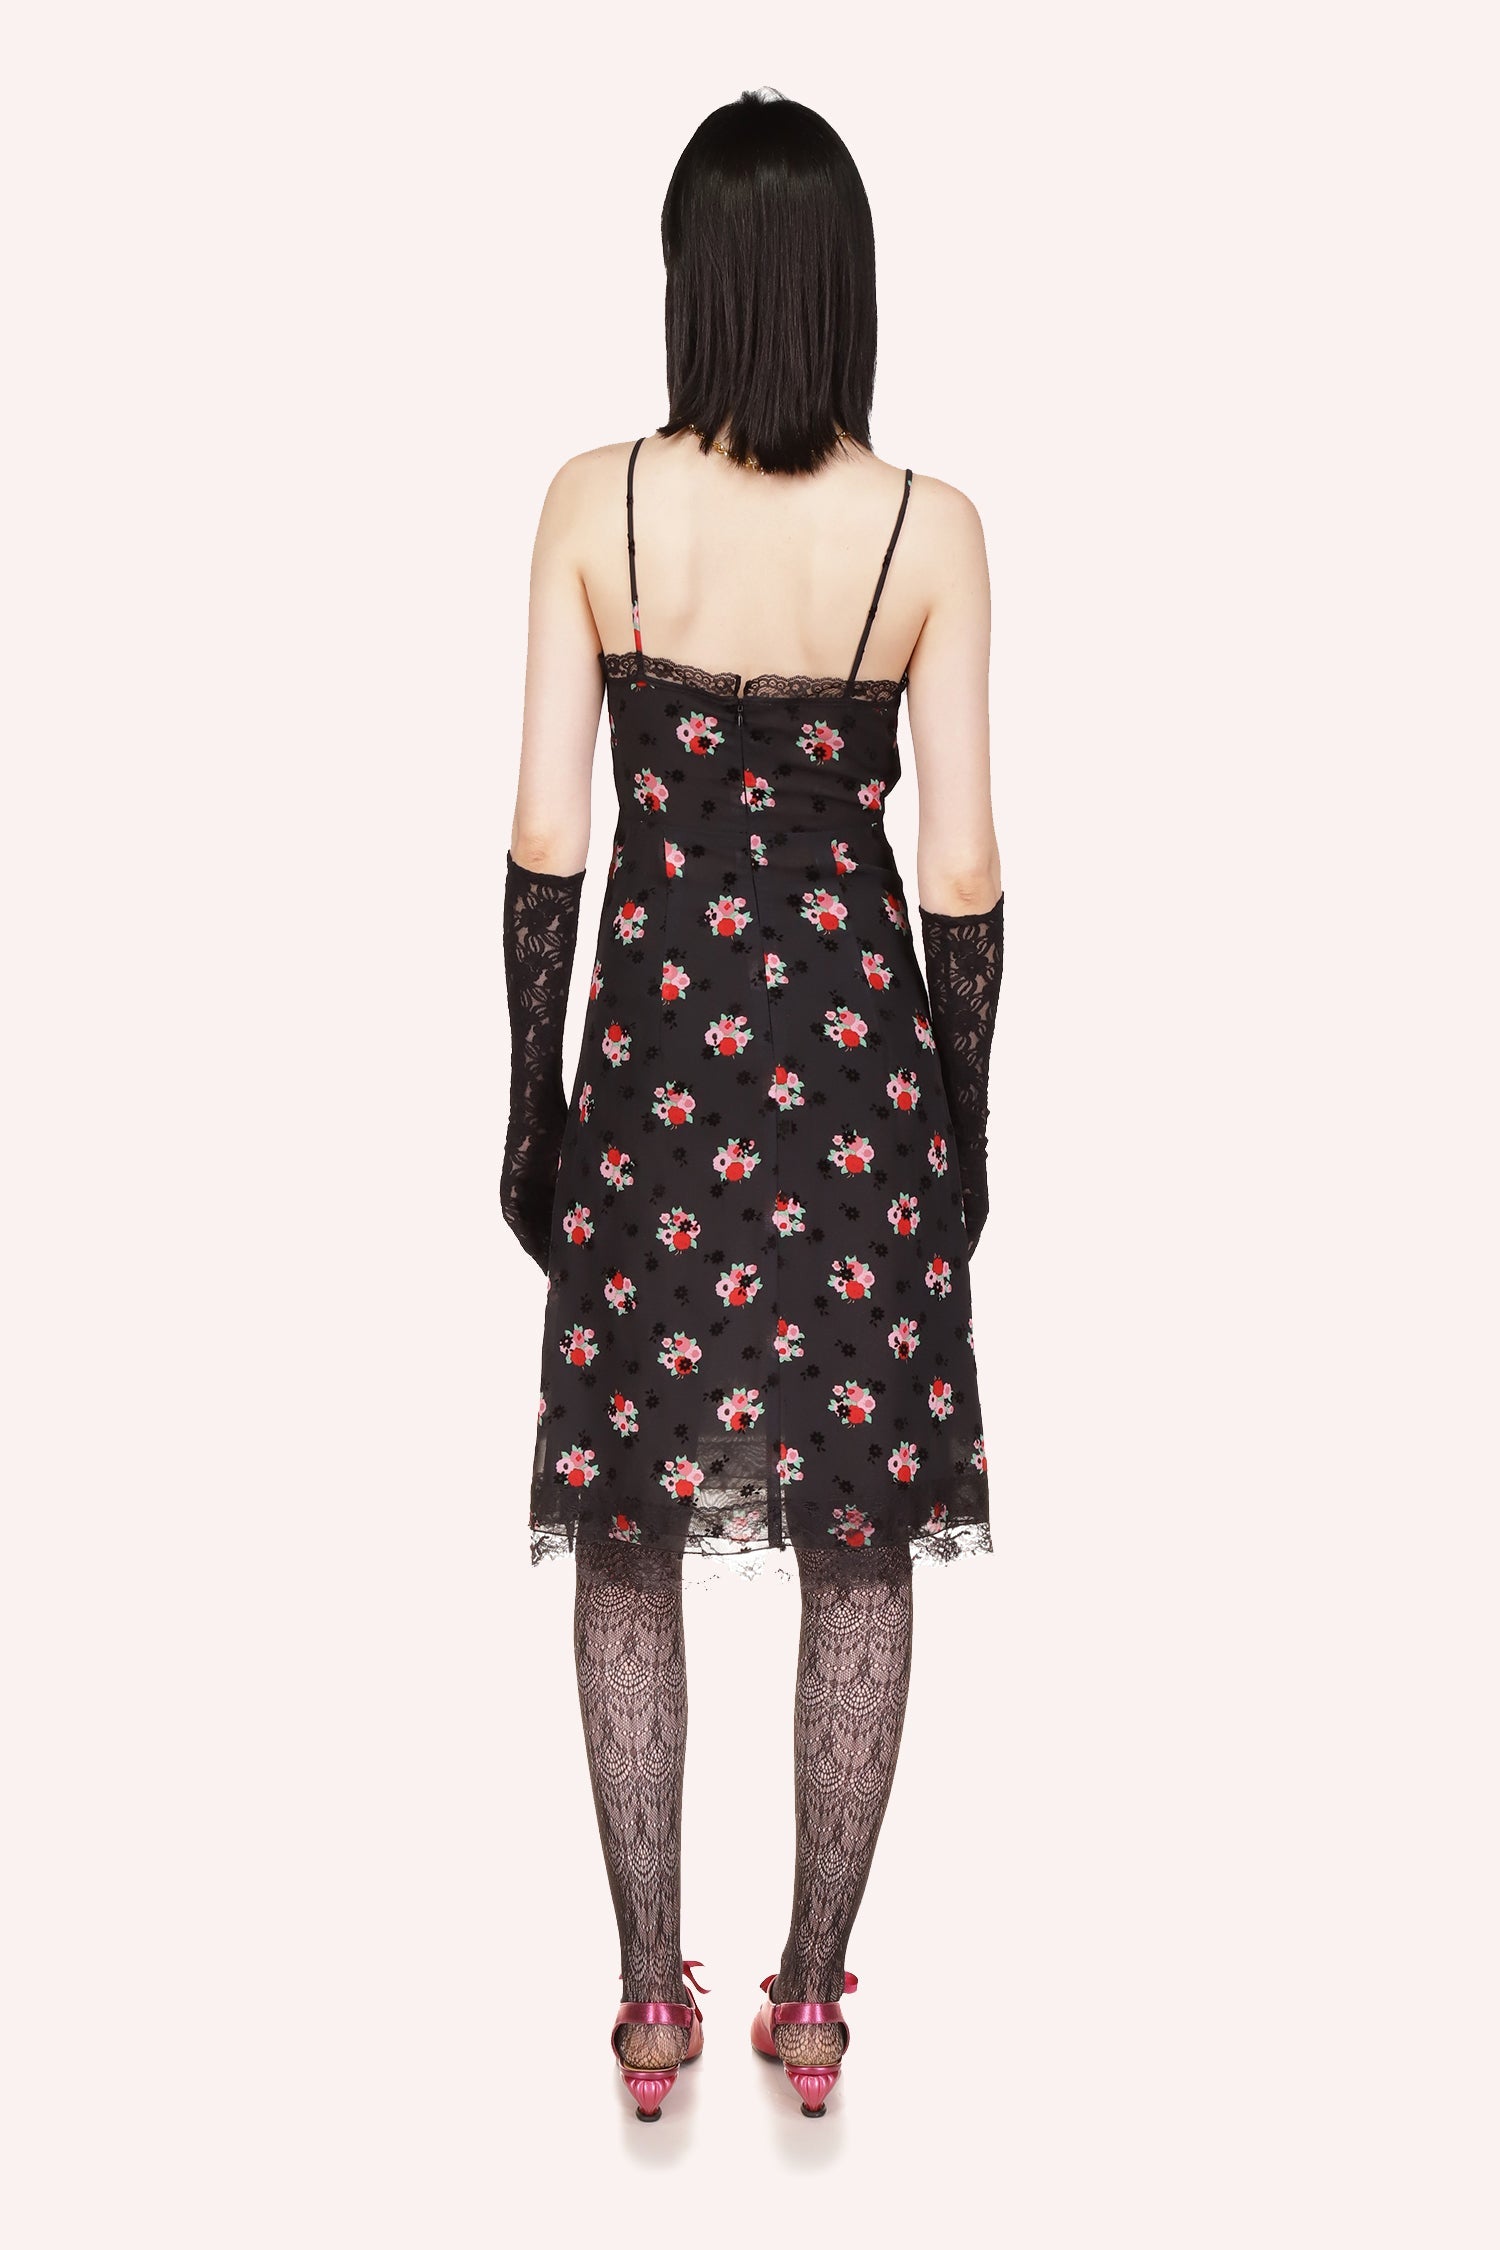 Anna Sui's Rosie Posie Slip Dress in Black Multi with the Rosie Posie bouquet pattern, zip on the back